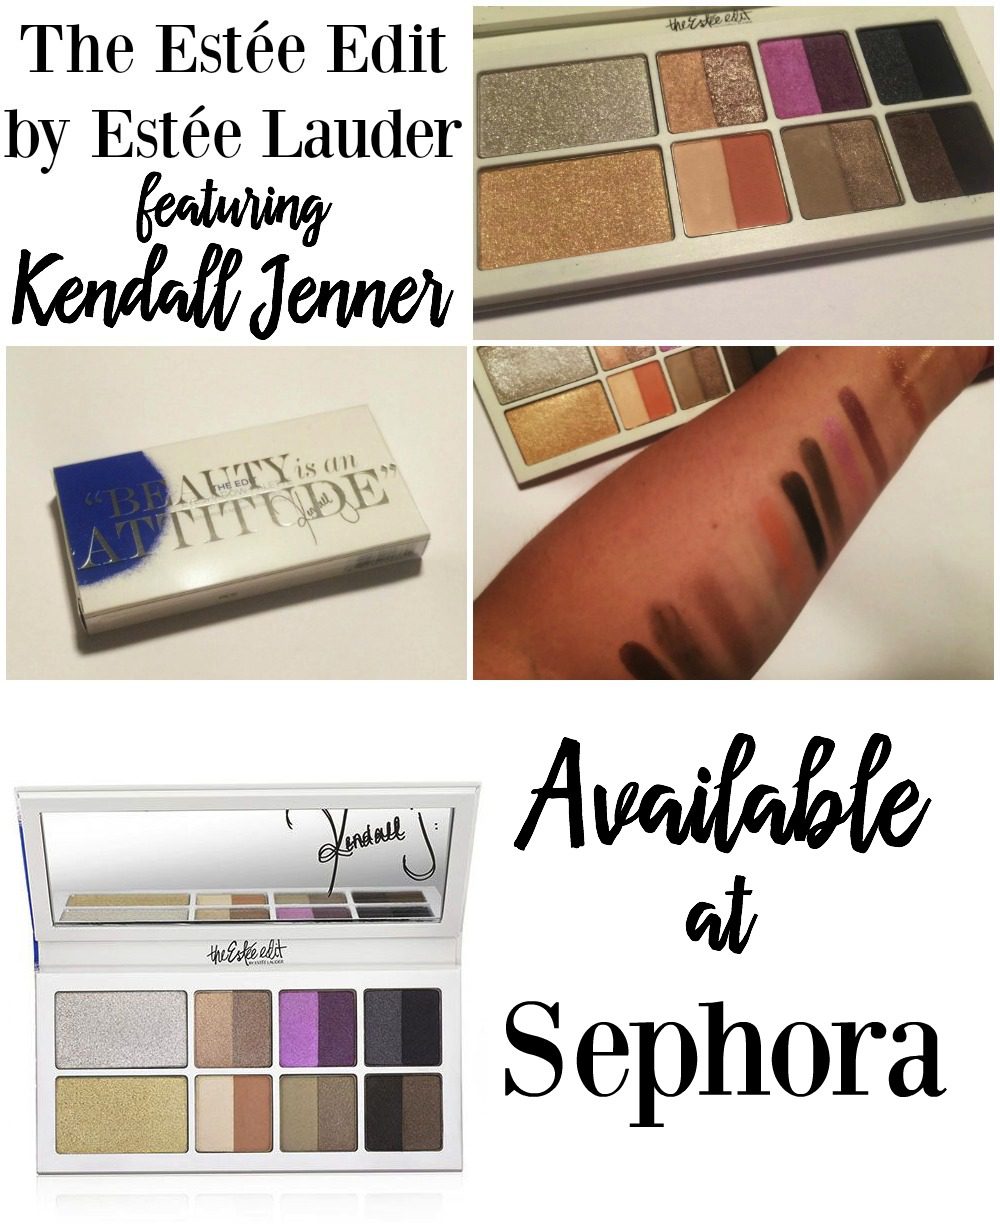 Estee Lauder Kendall Jenner Palette Review The Estee Edit